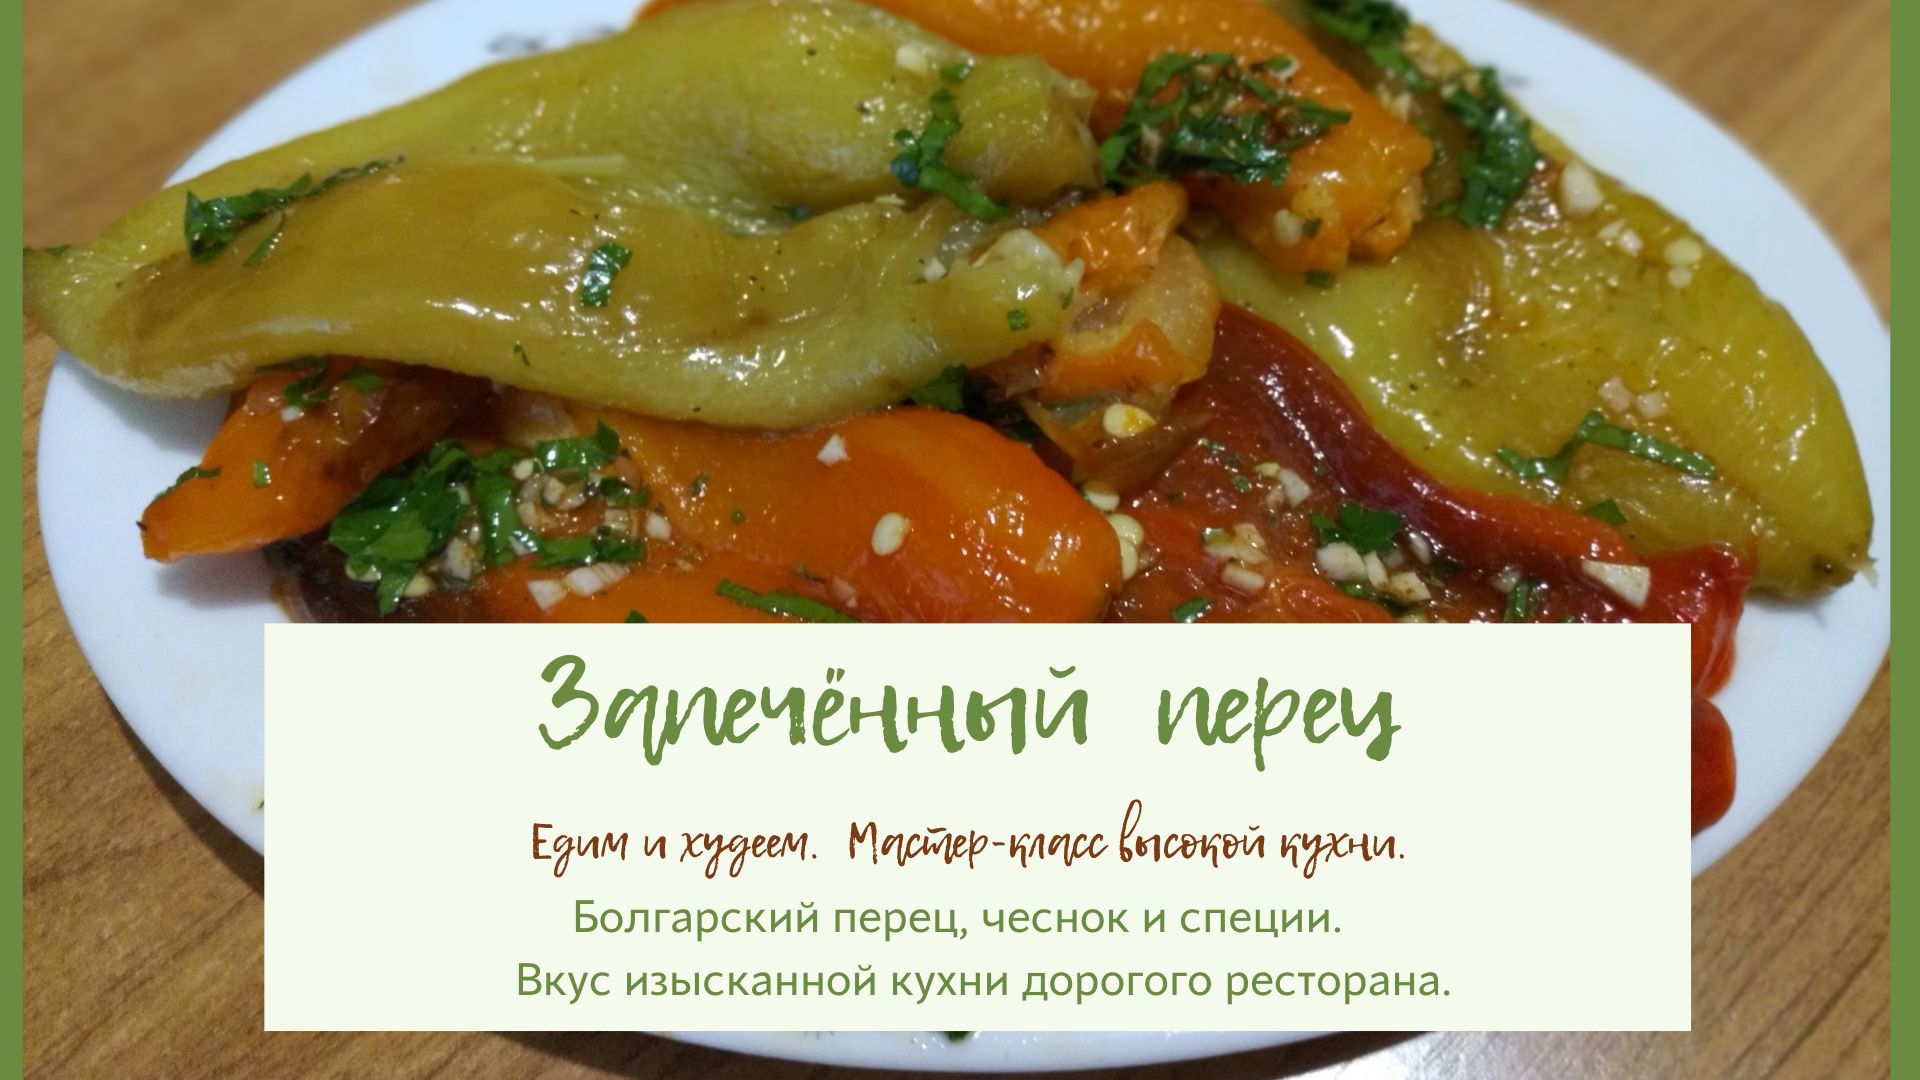 Вкусный и полезный запечённый болгарский перец. Подходит для тех, кто на диете.